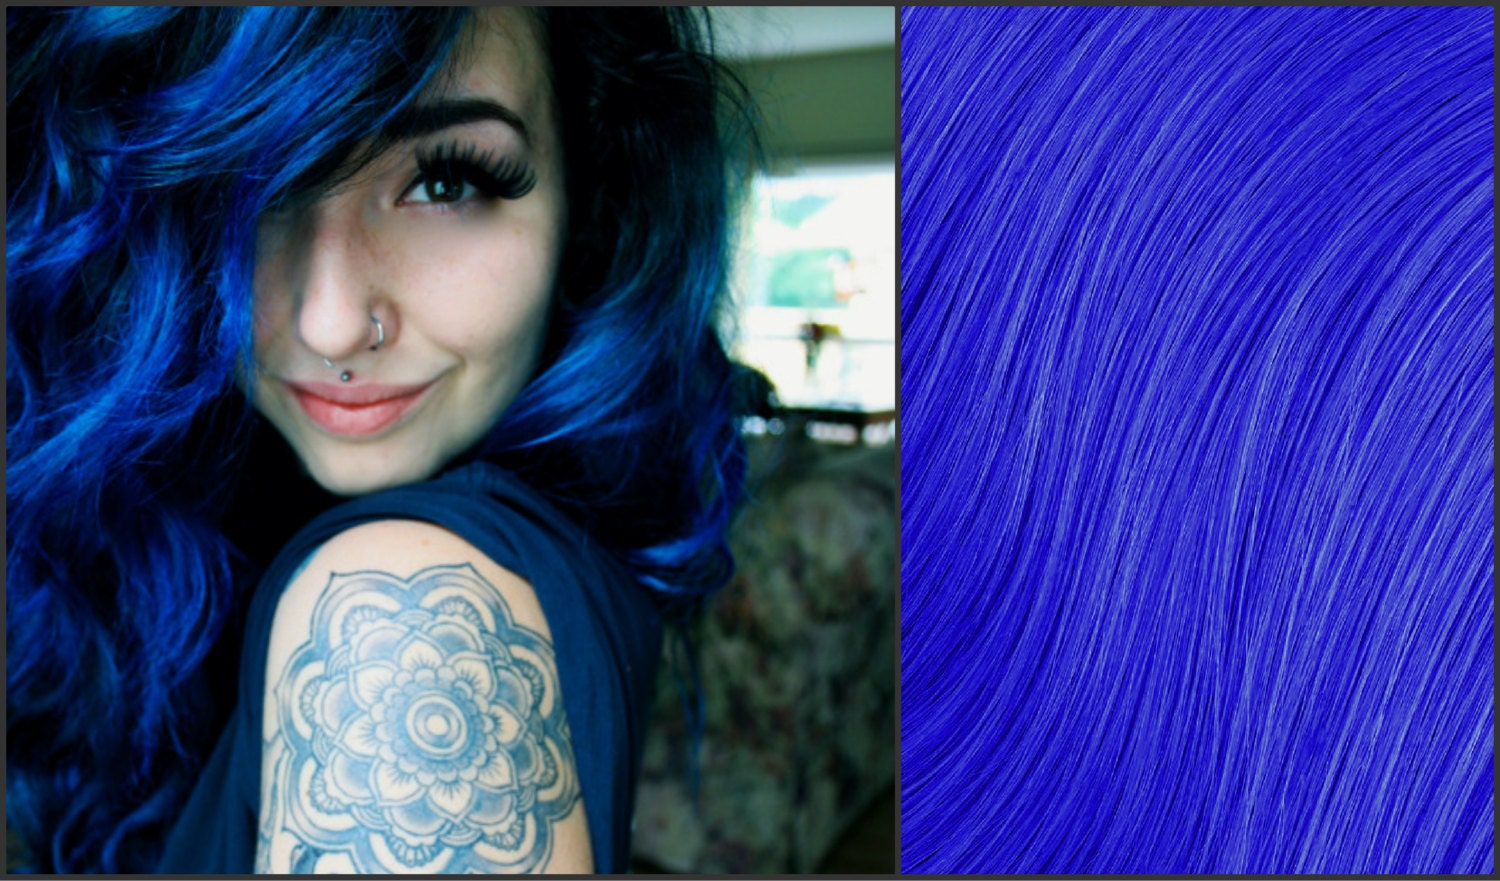 5. "Sapphire Blue Hair" - wide 5